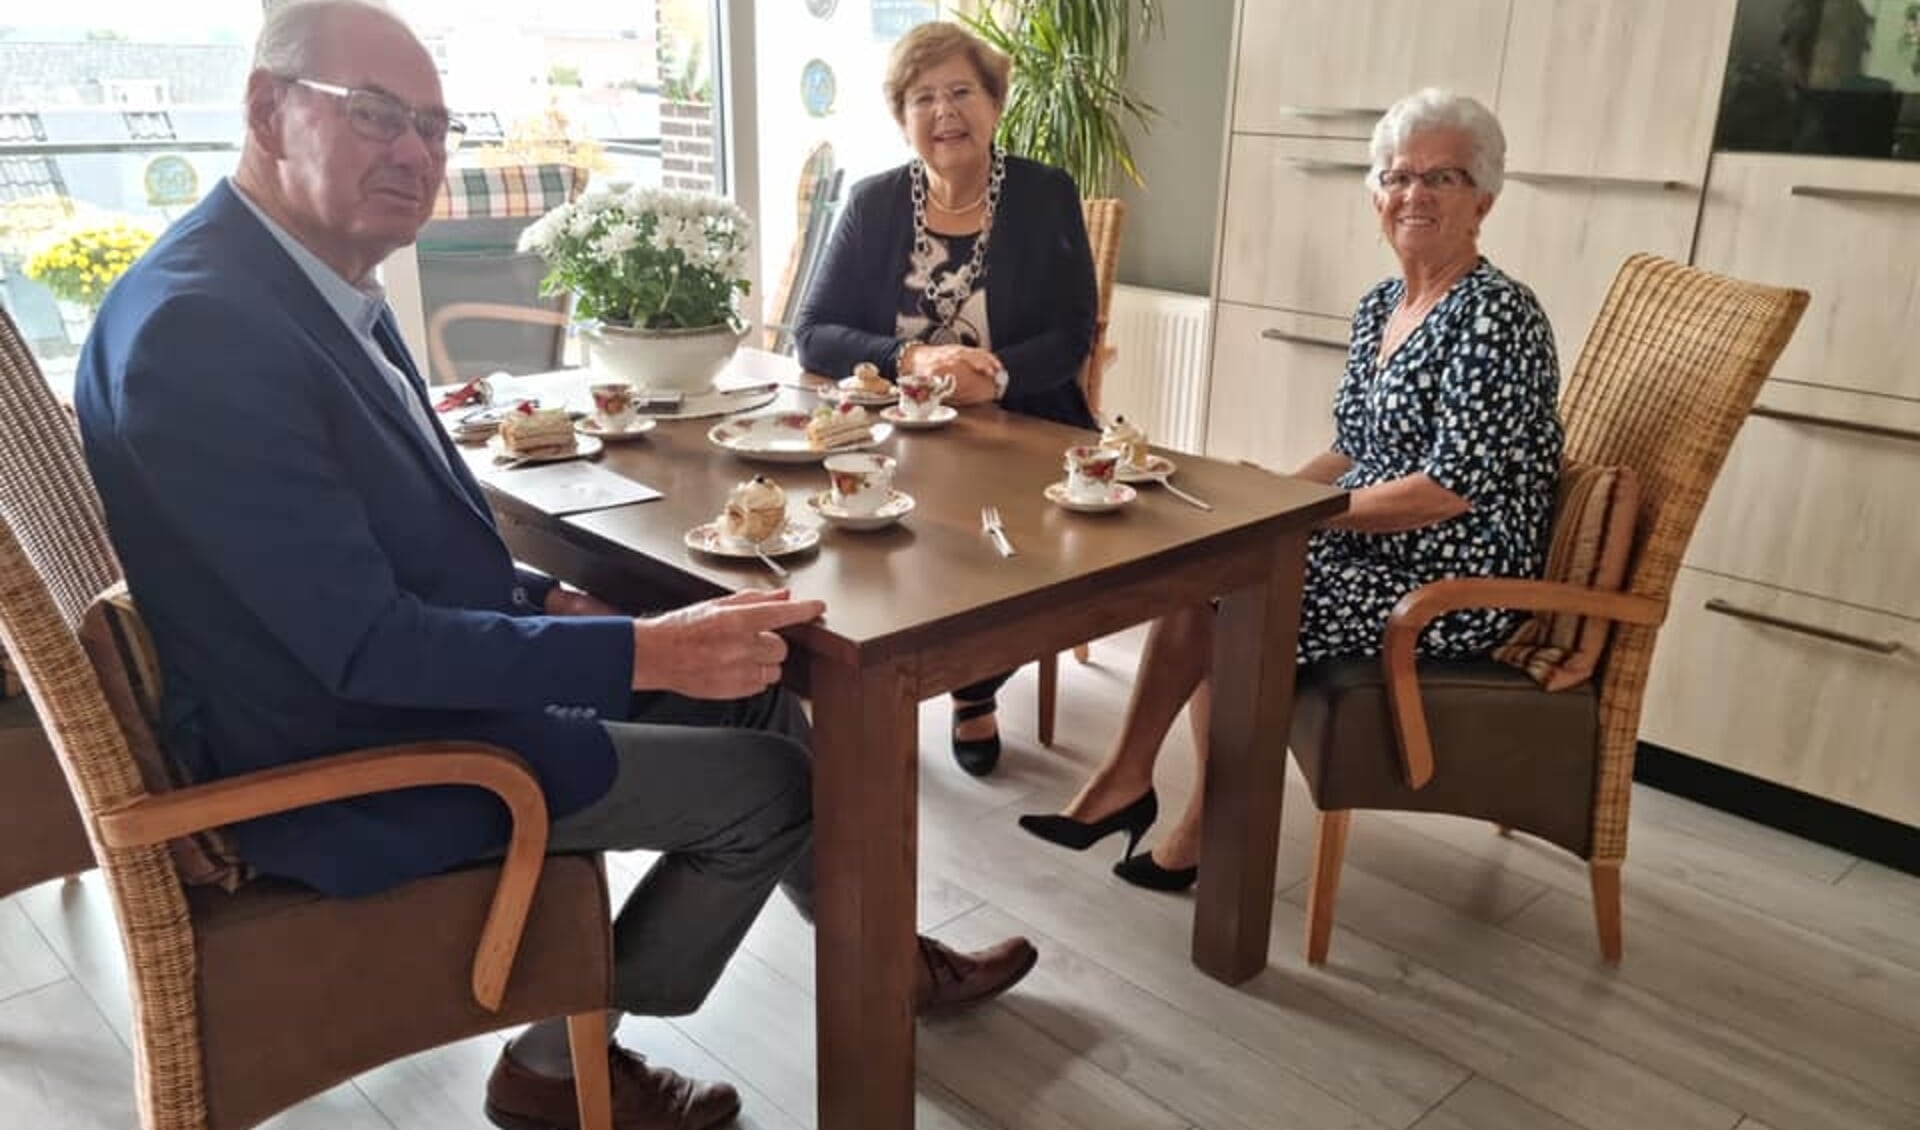 Het echtpaar Zandvliet kreeg bezoek van de burgemeester vanwege het 60-jarig huwelijk.